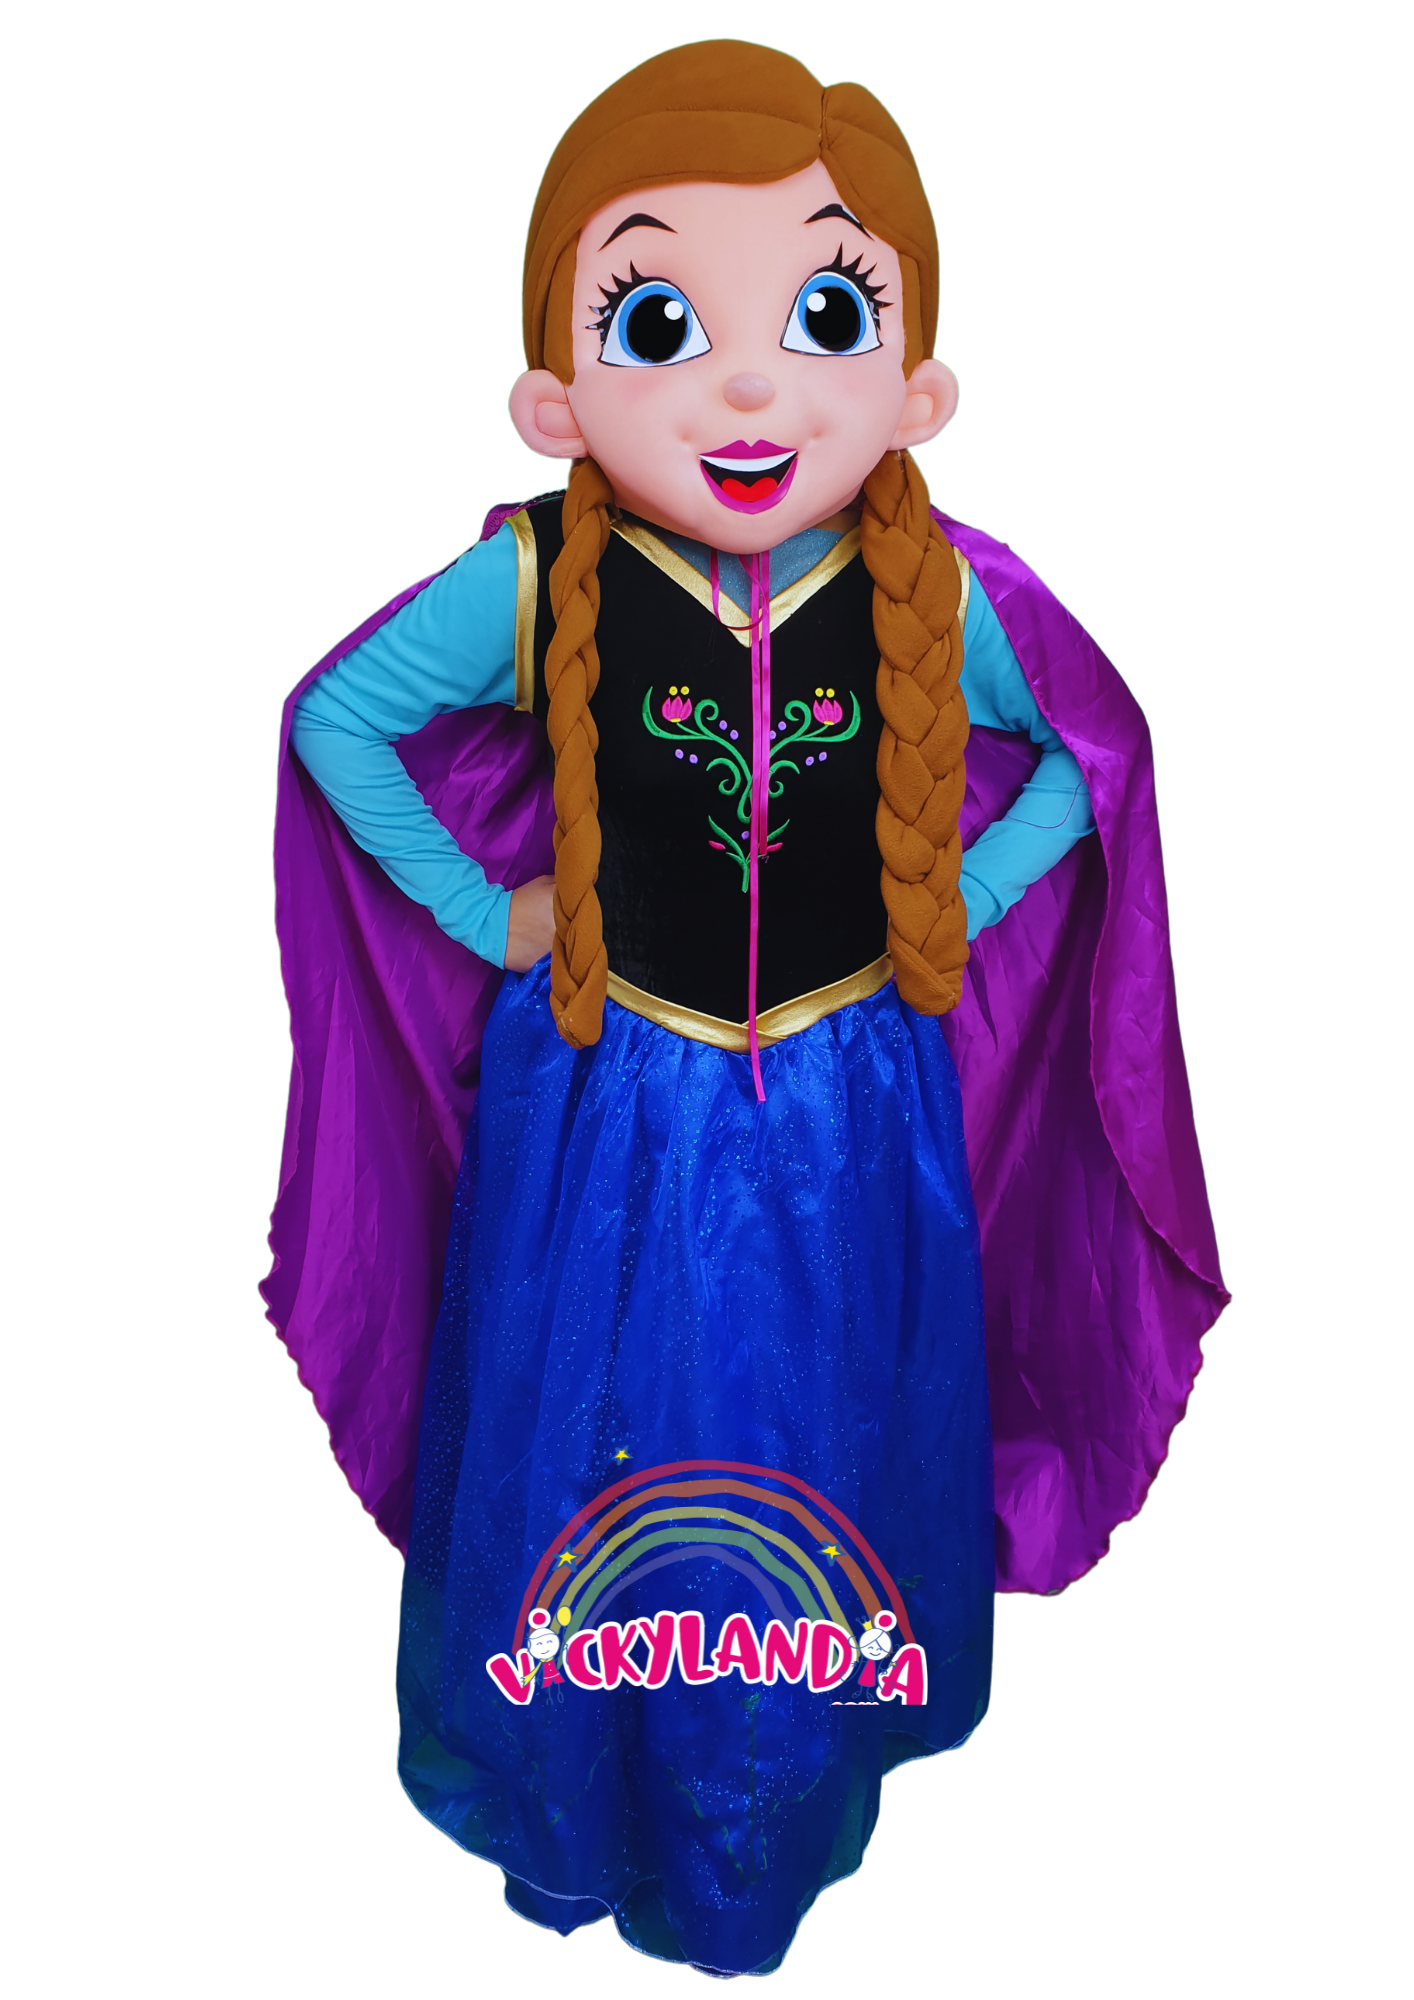 nieve princesa hielo disfraz muñeco cabezon cabezudo botarga mascota publicitaria Peluches personalizados Merchandising corporativos  personalizados fabricante vickylandia